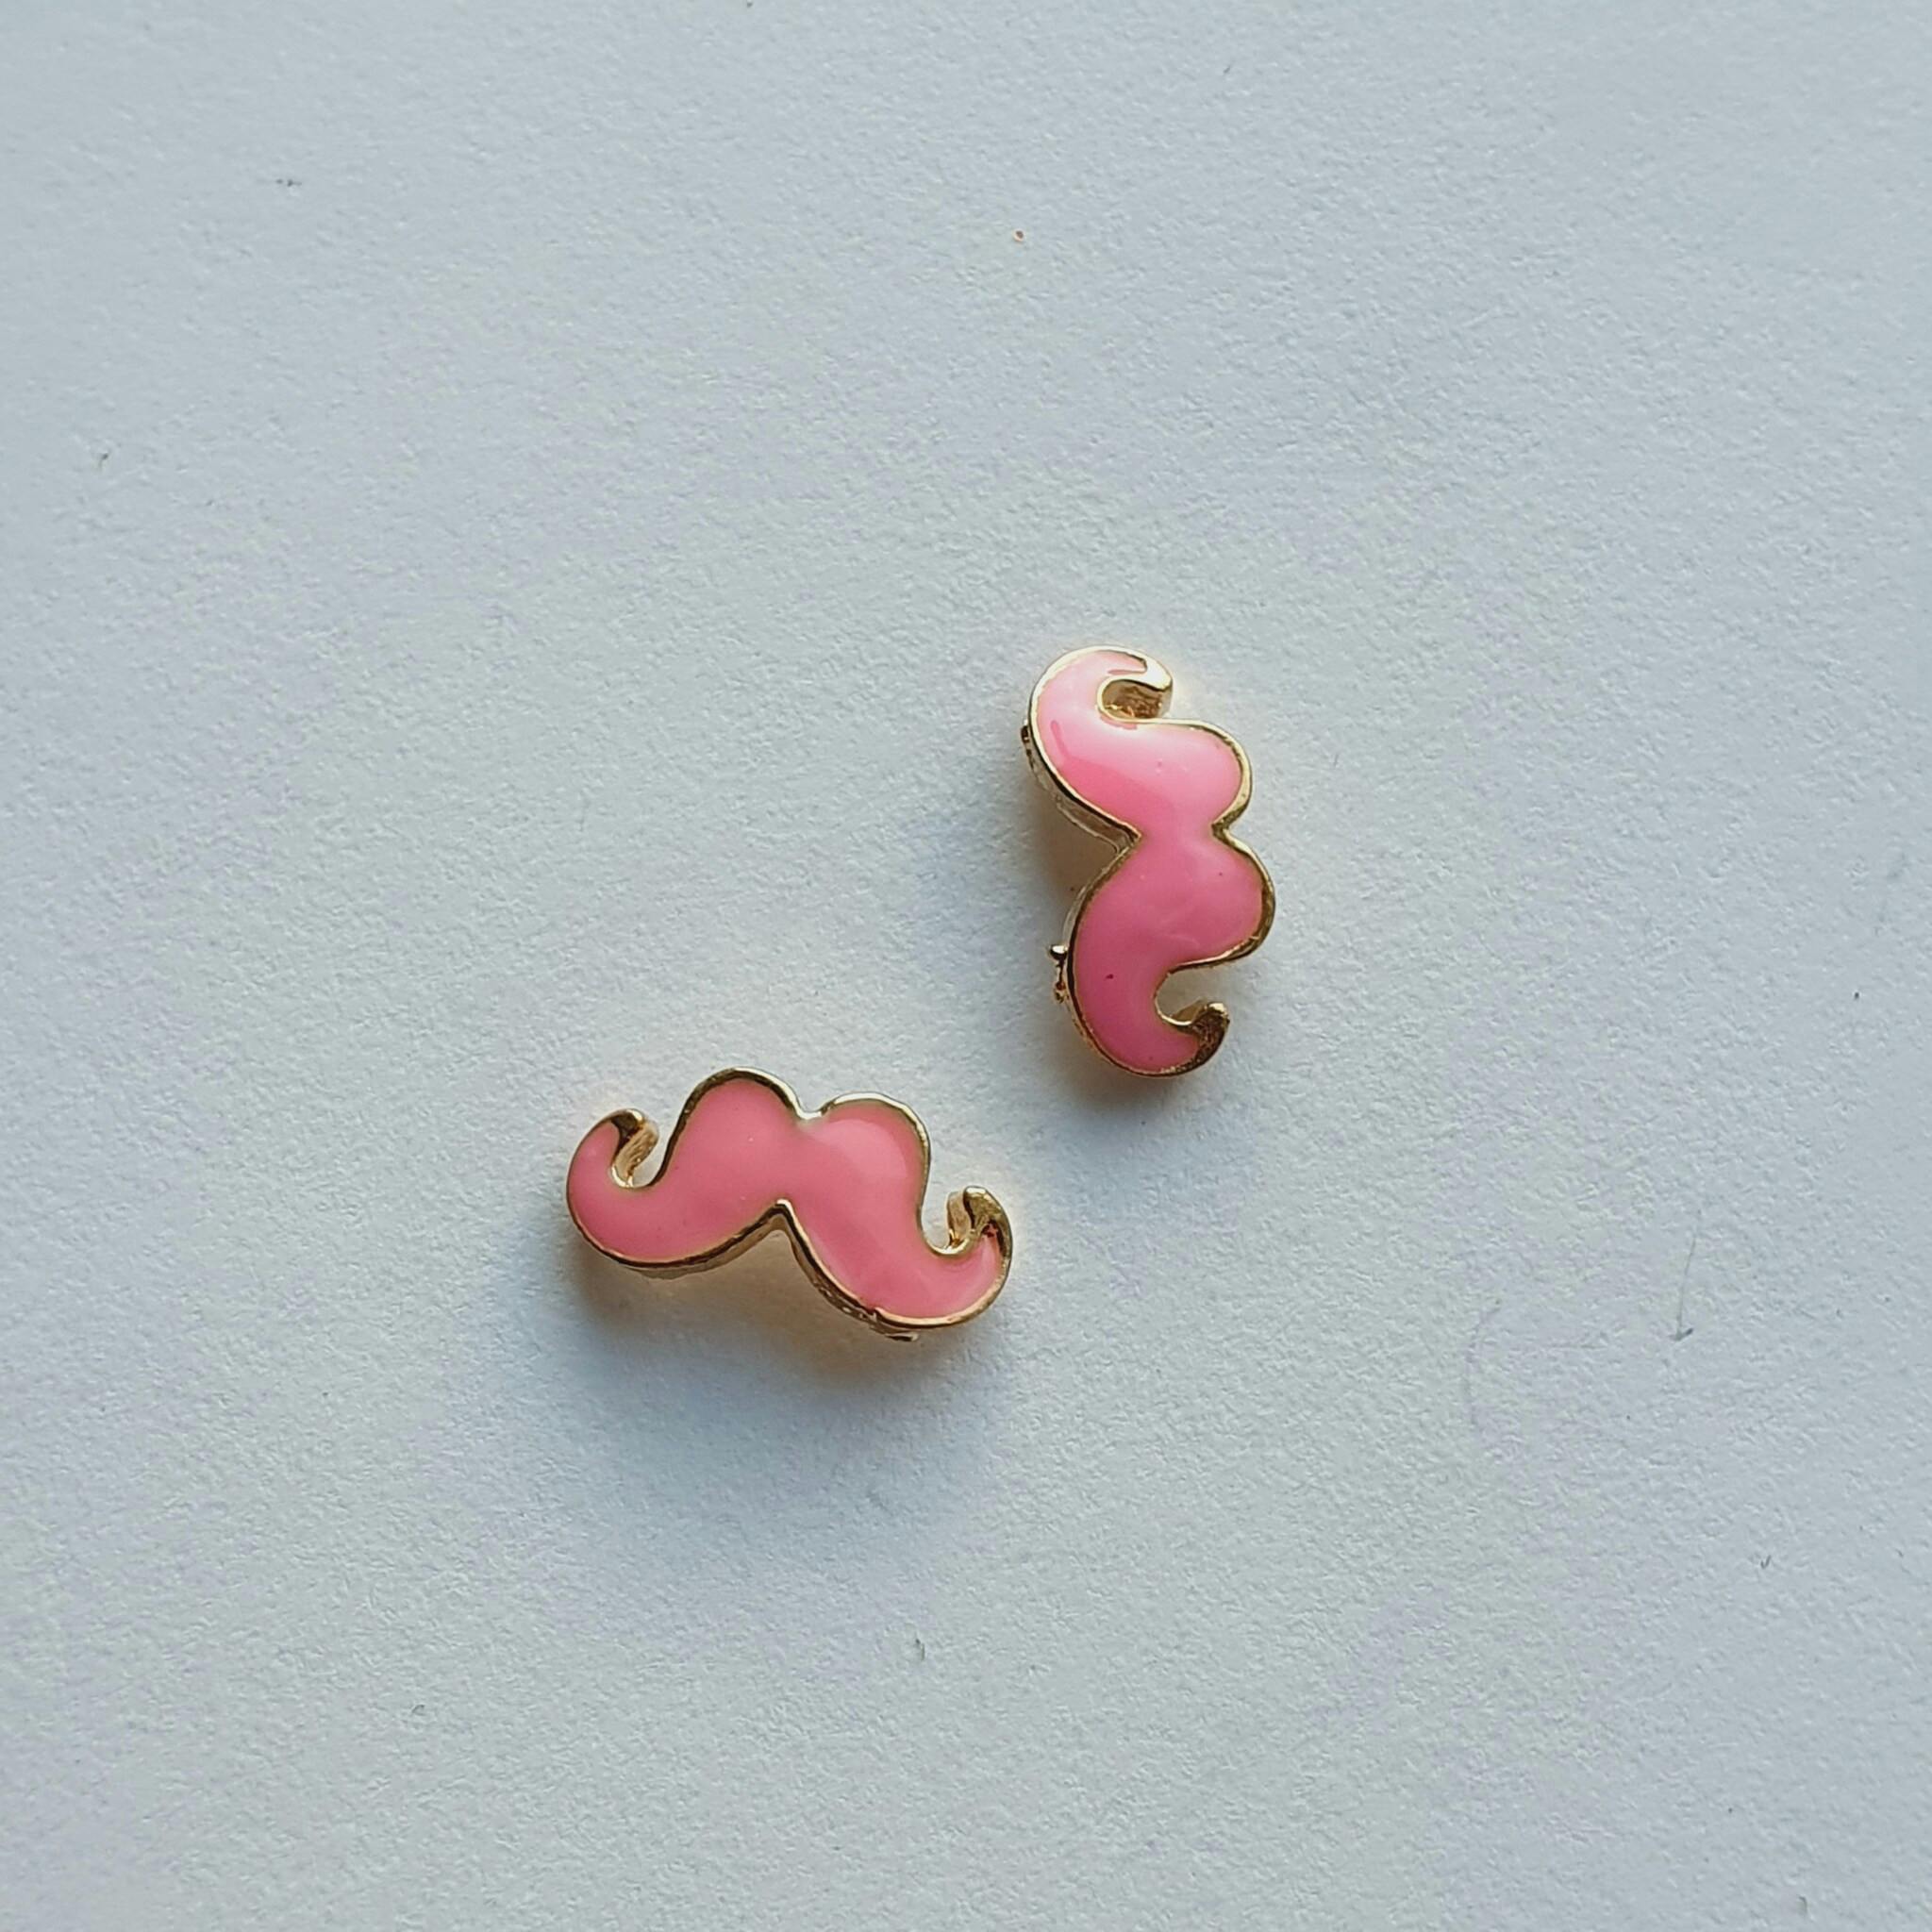 3D Decoration Mustache Pink